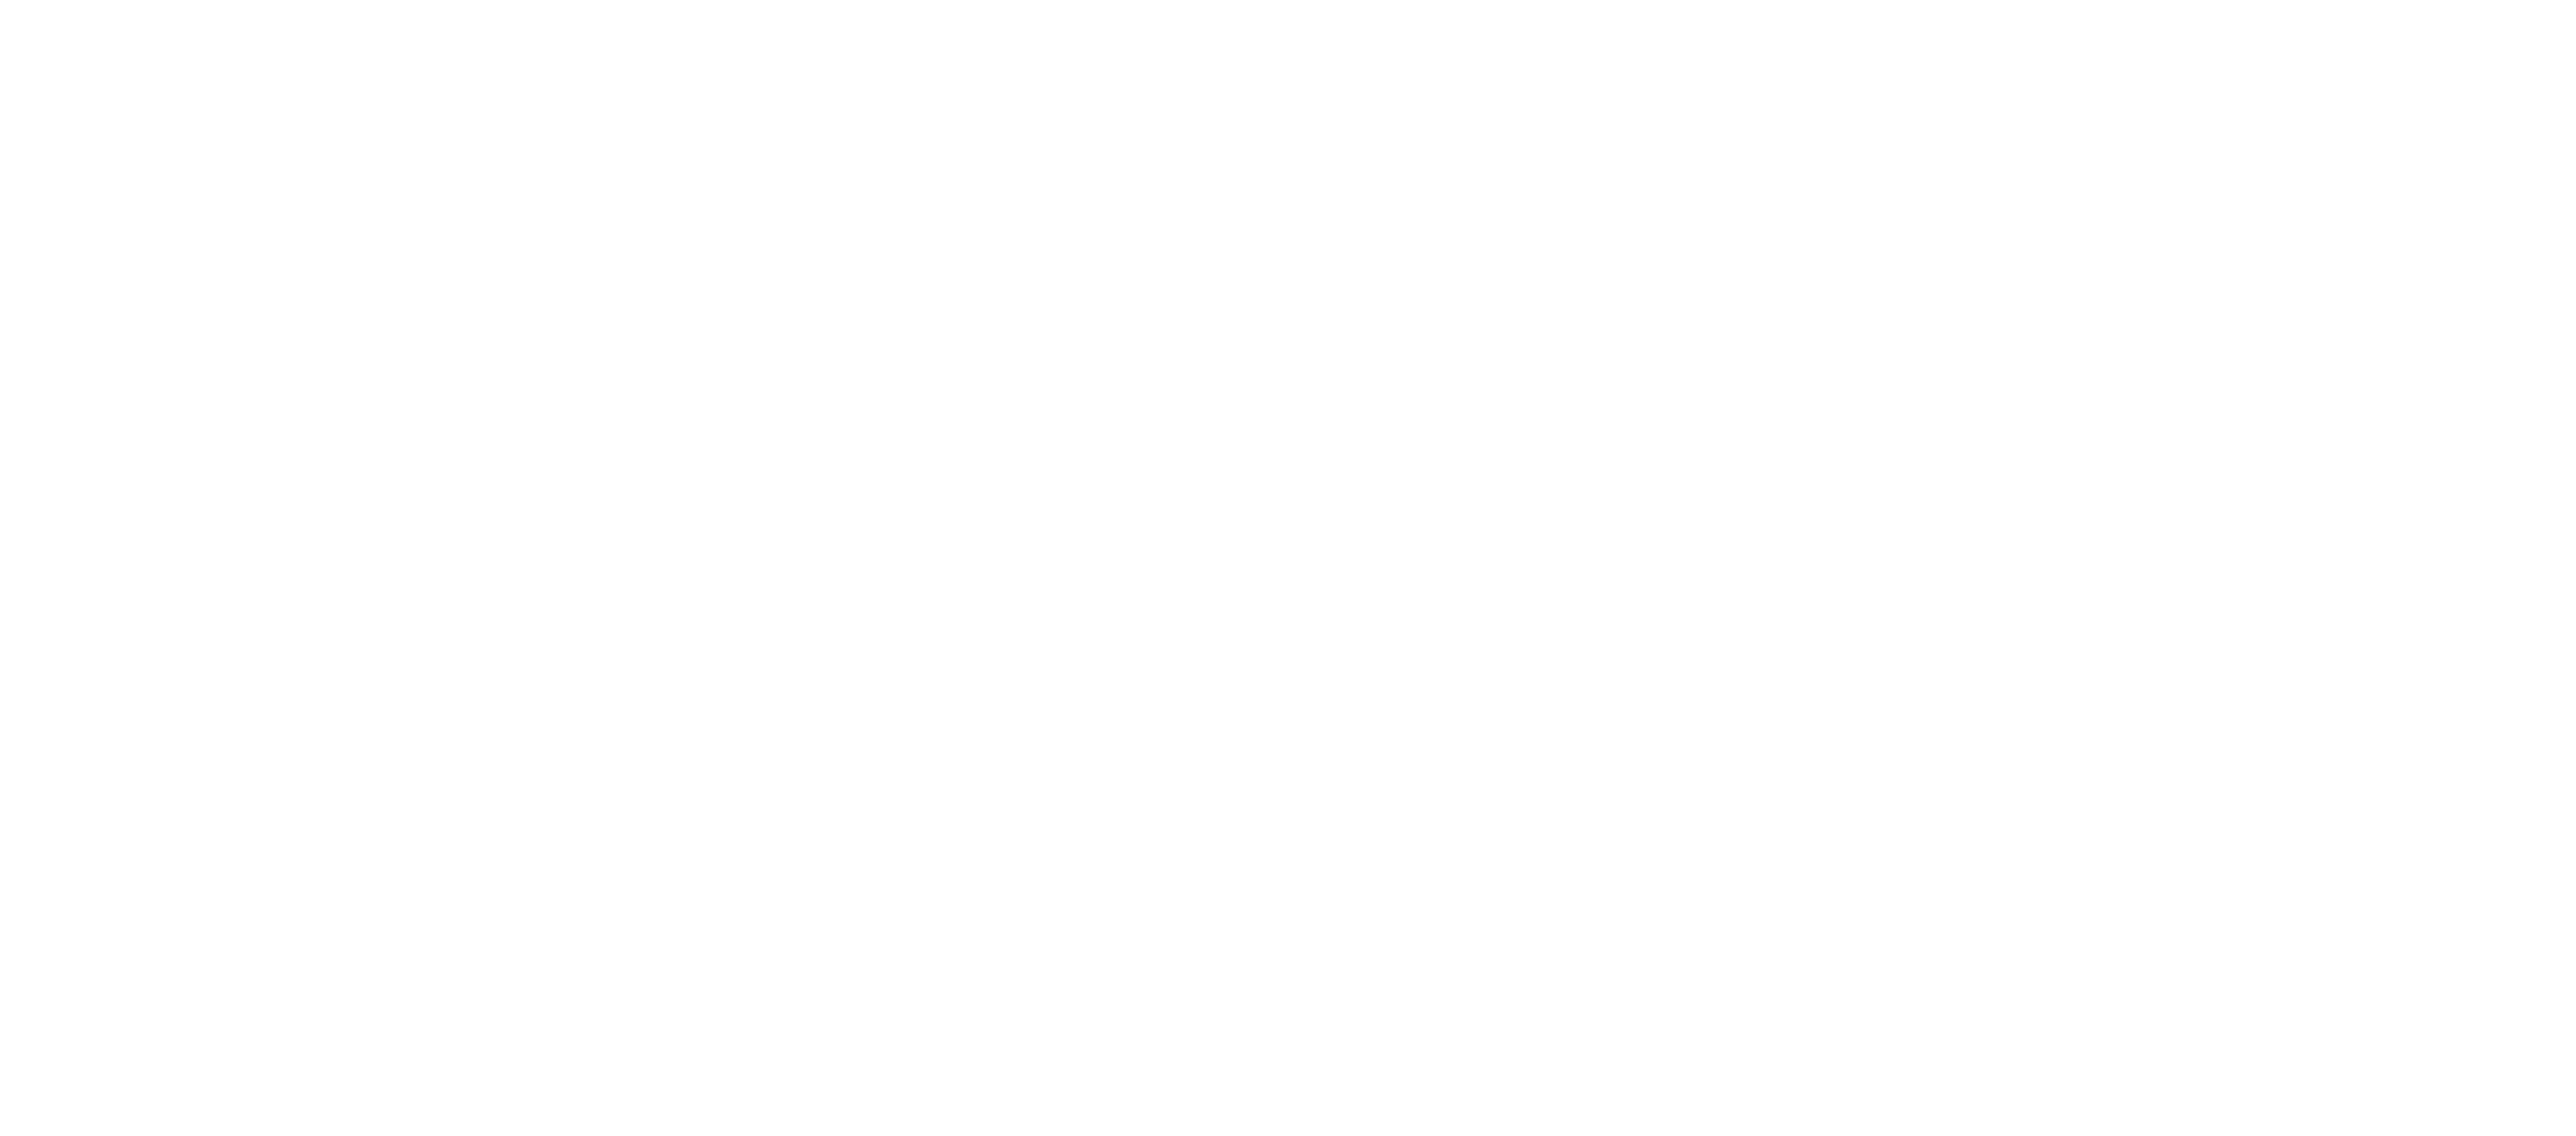 Fresno EOC Primary Logo, Color